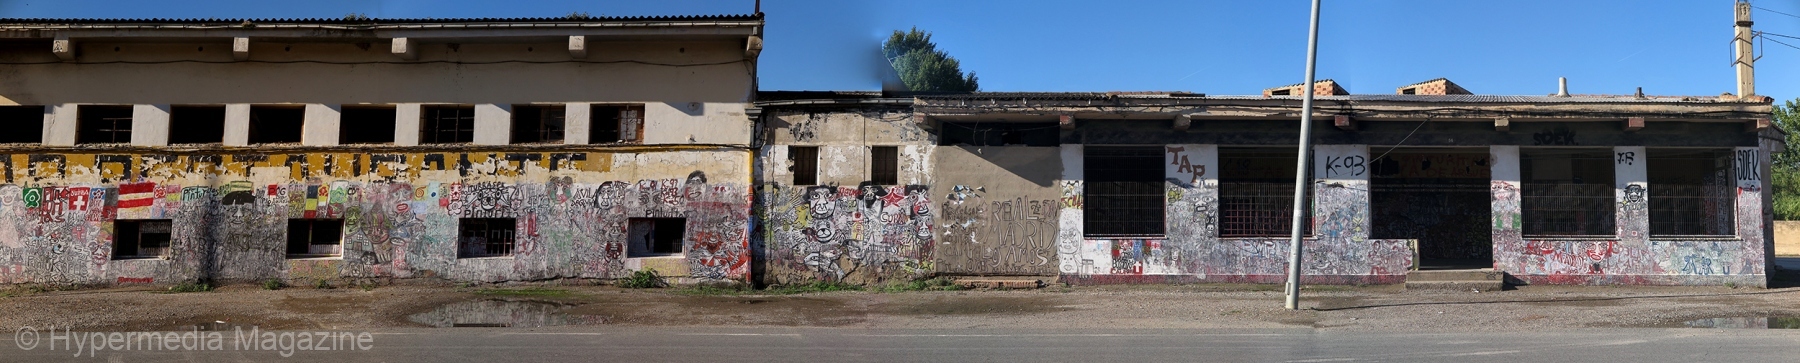 Murales, fachada de edificio, 2021